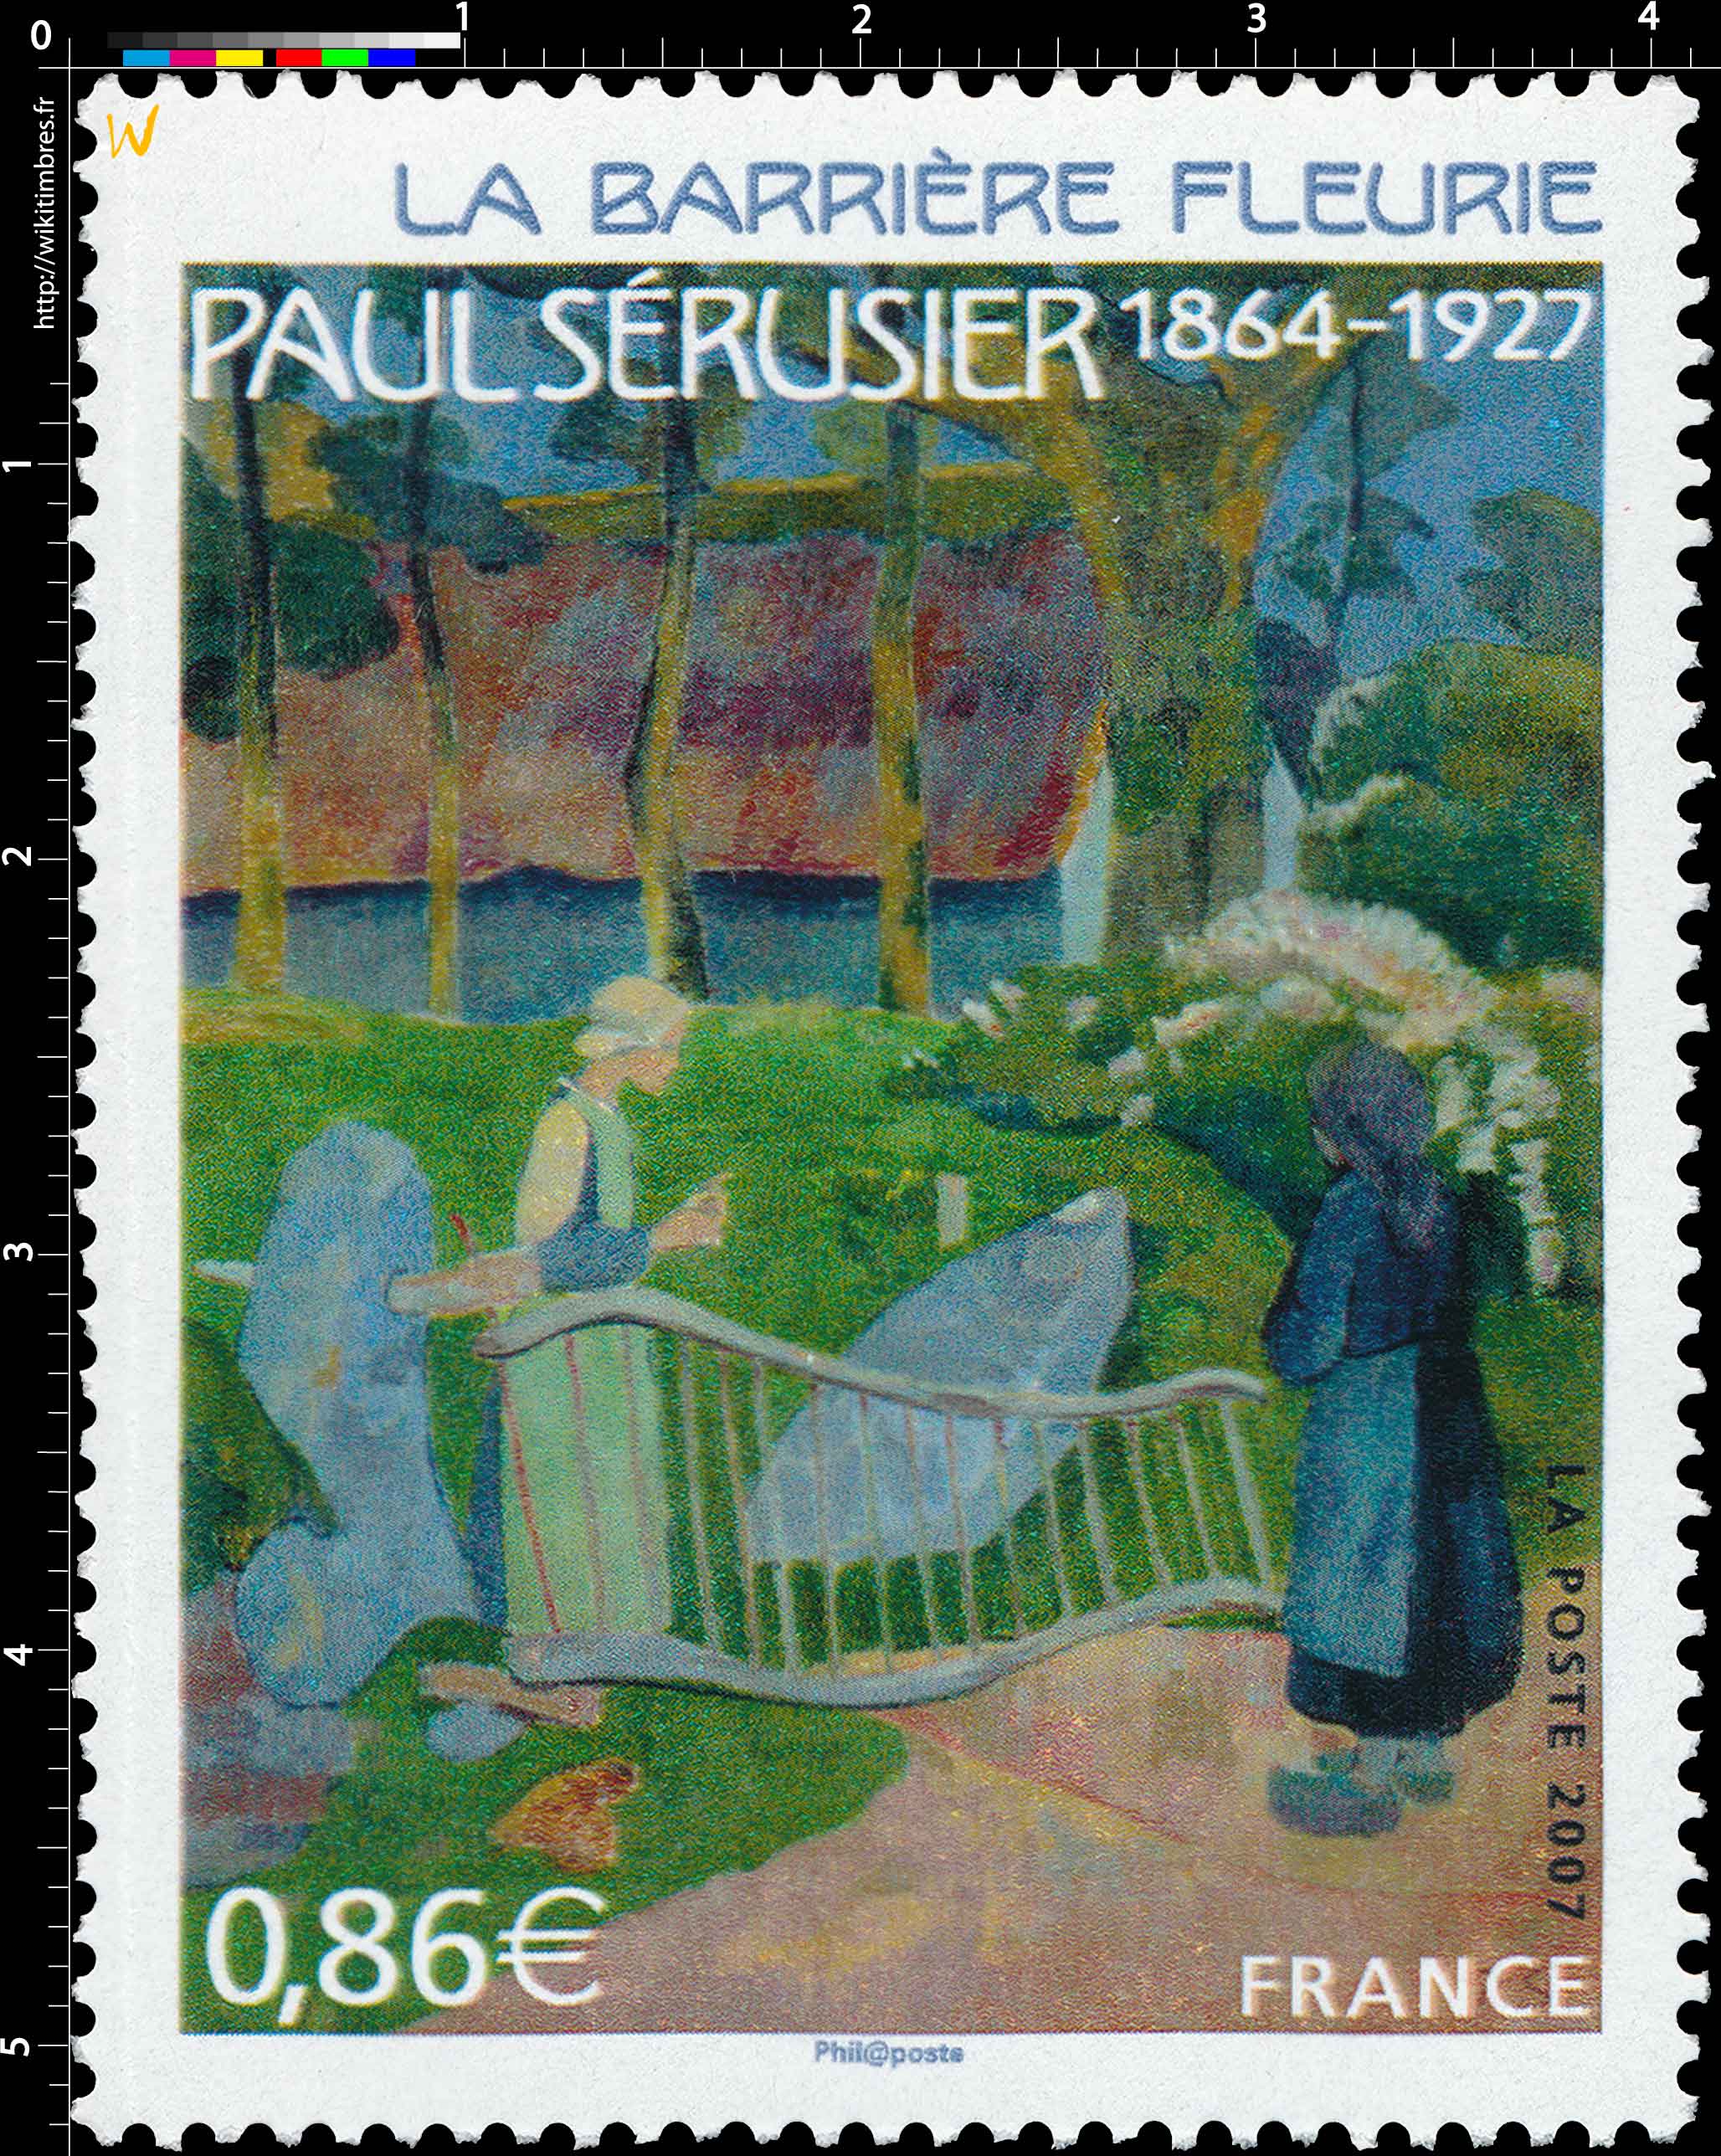 2007 PAUL SÉRUSIER 1864 – 1927 LA BARRIÈRE FLEURIE